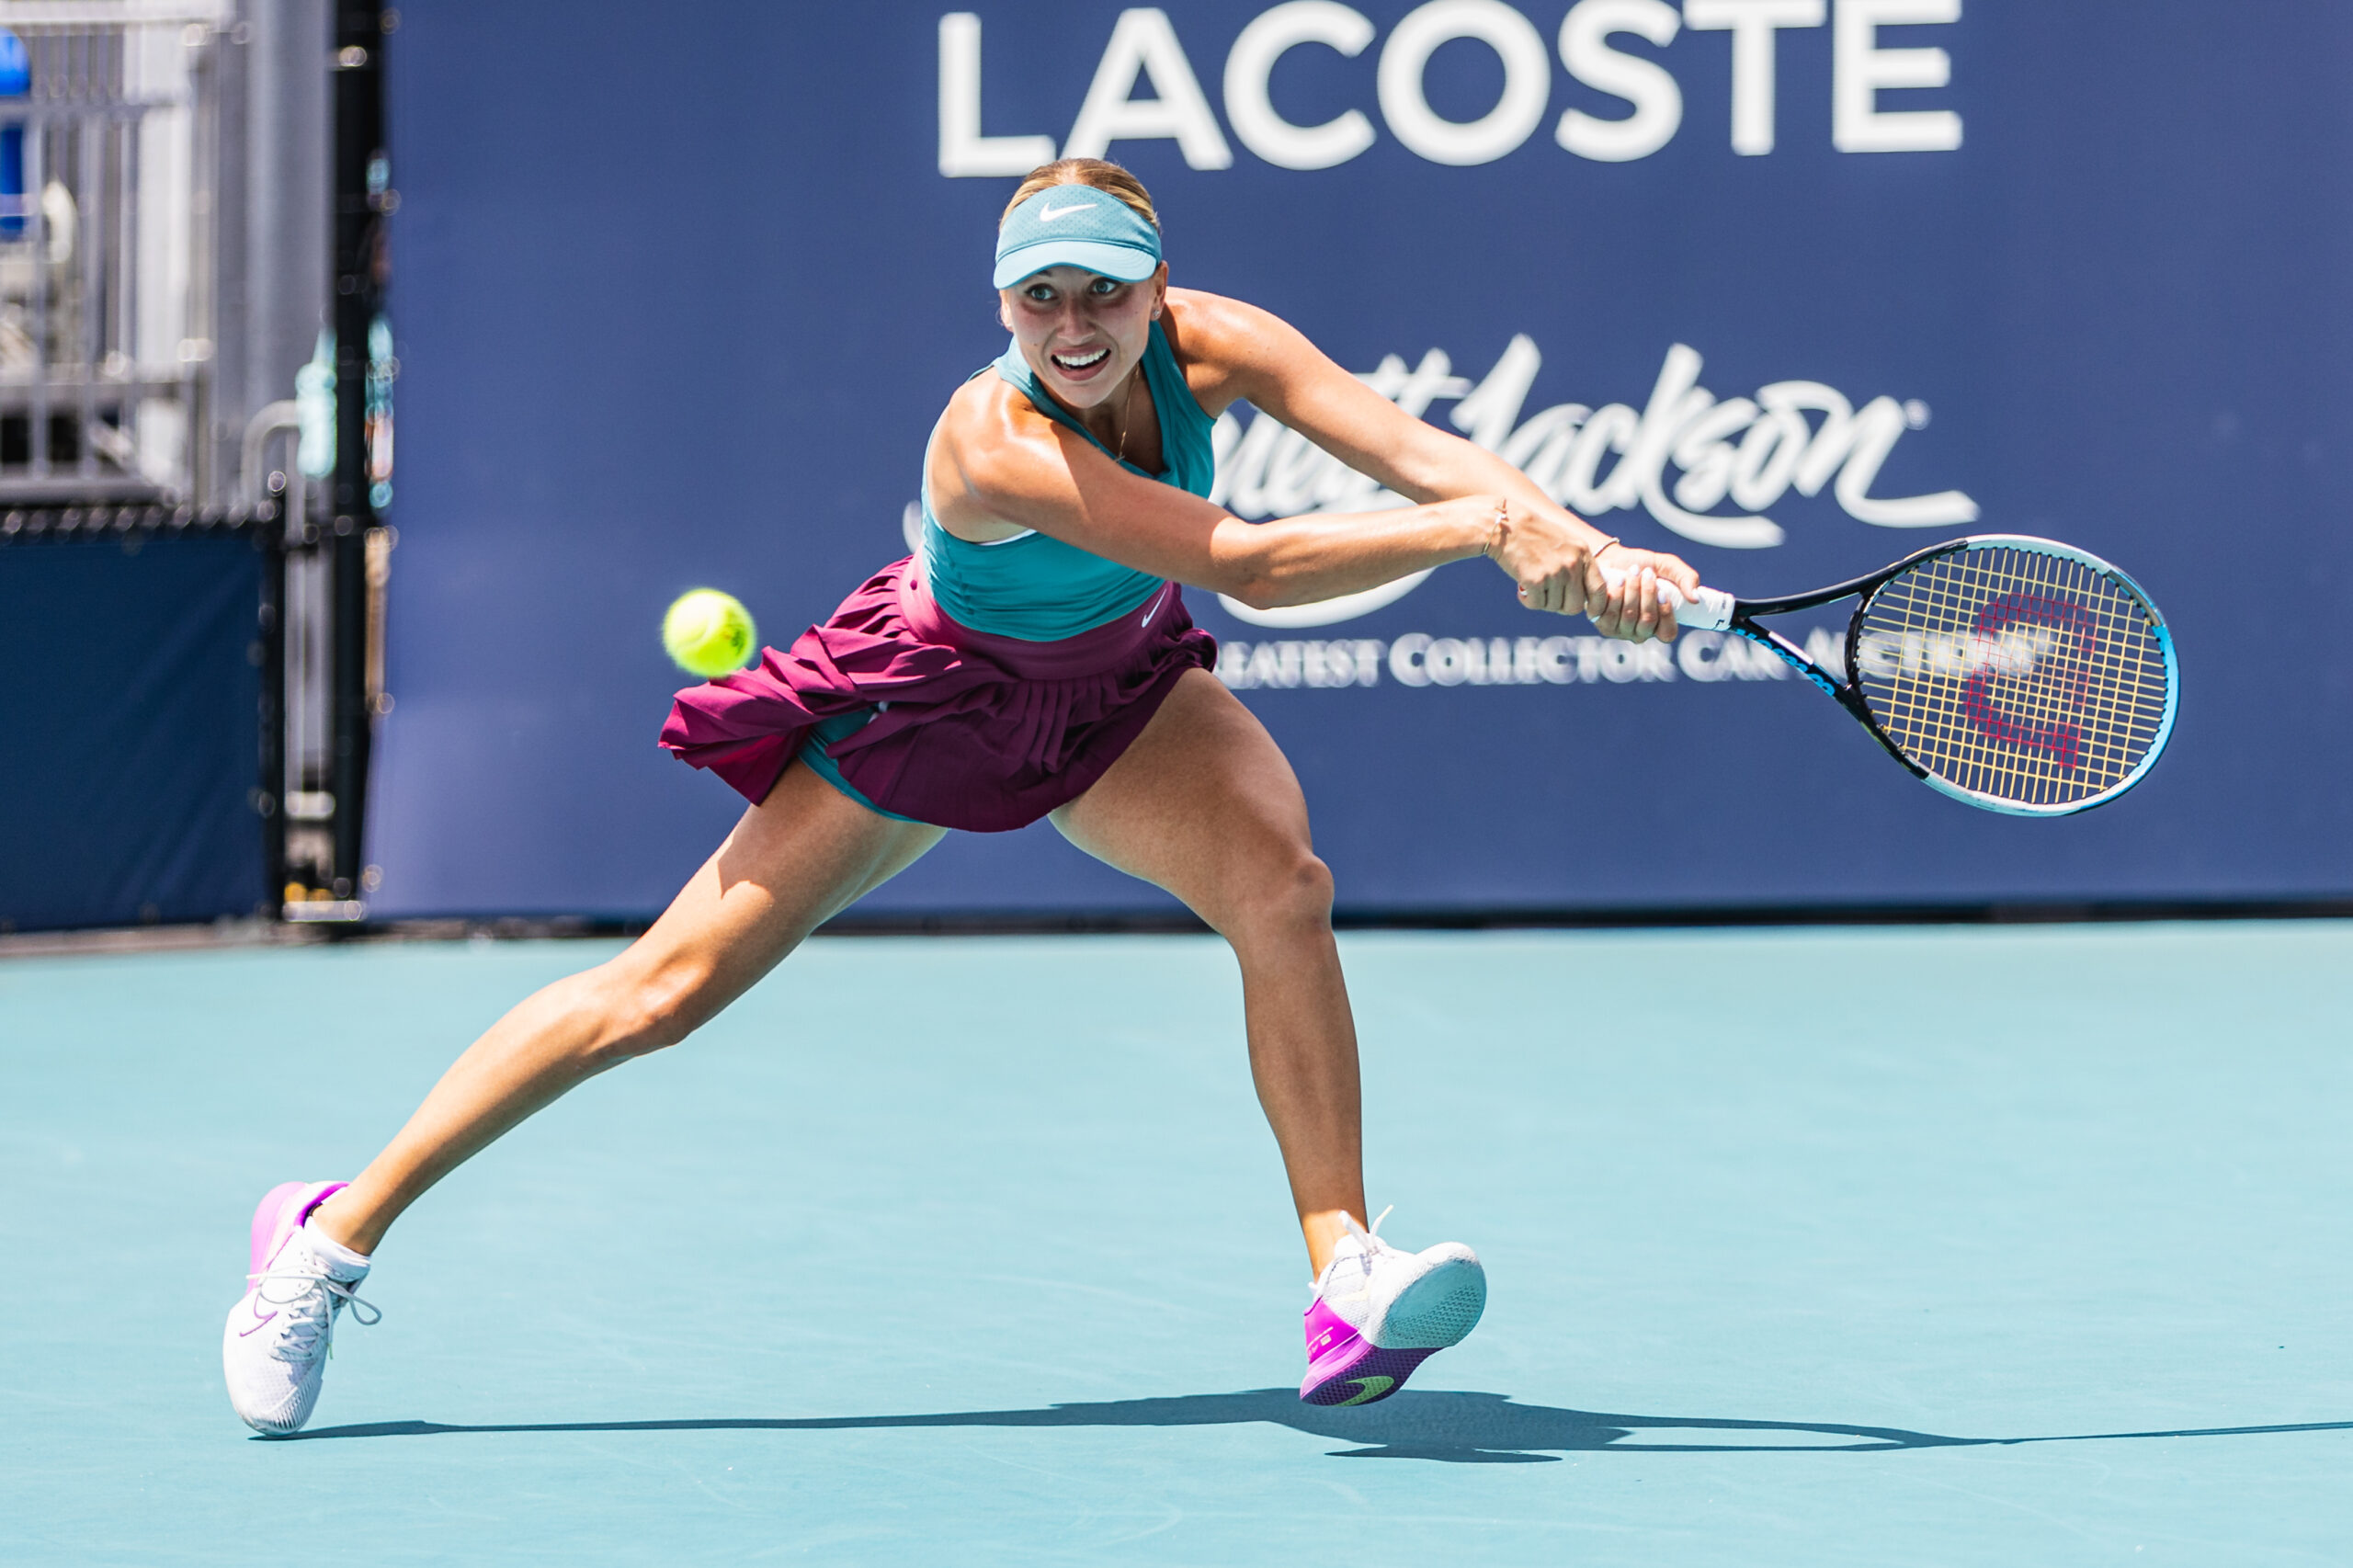 Anastasia Potapova on March 27, 2023 at the Miami Open